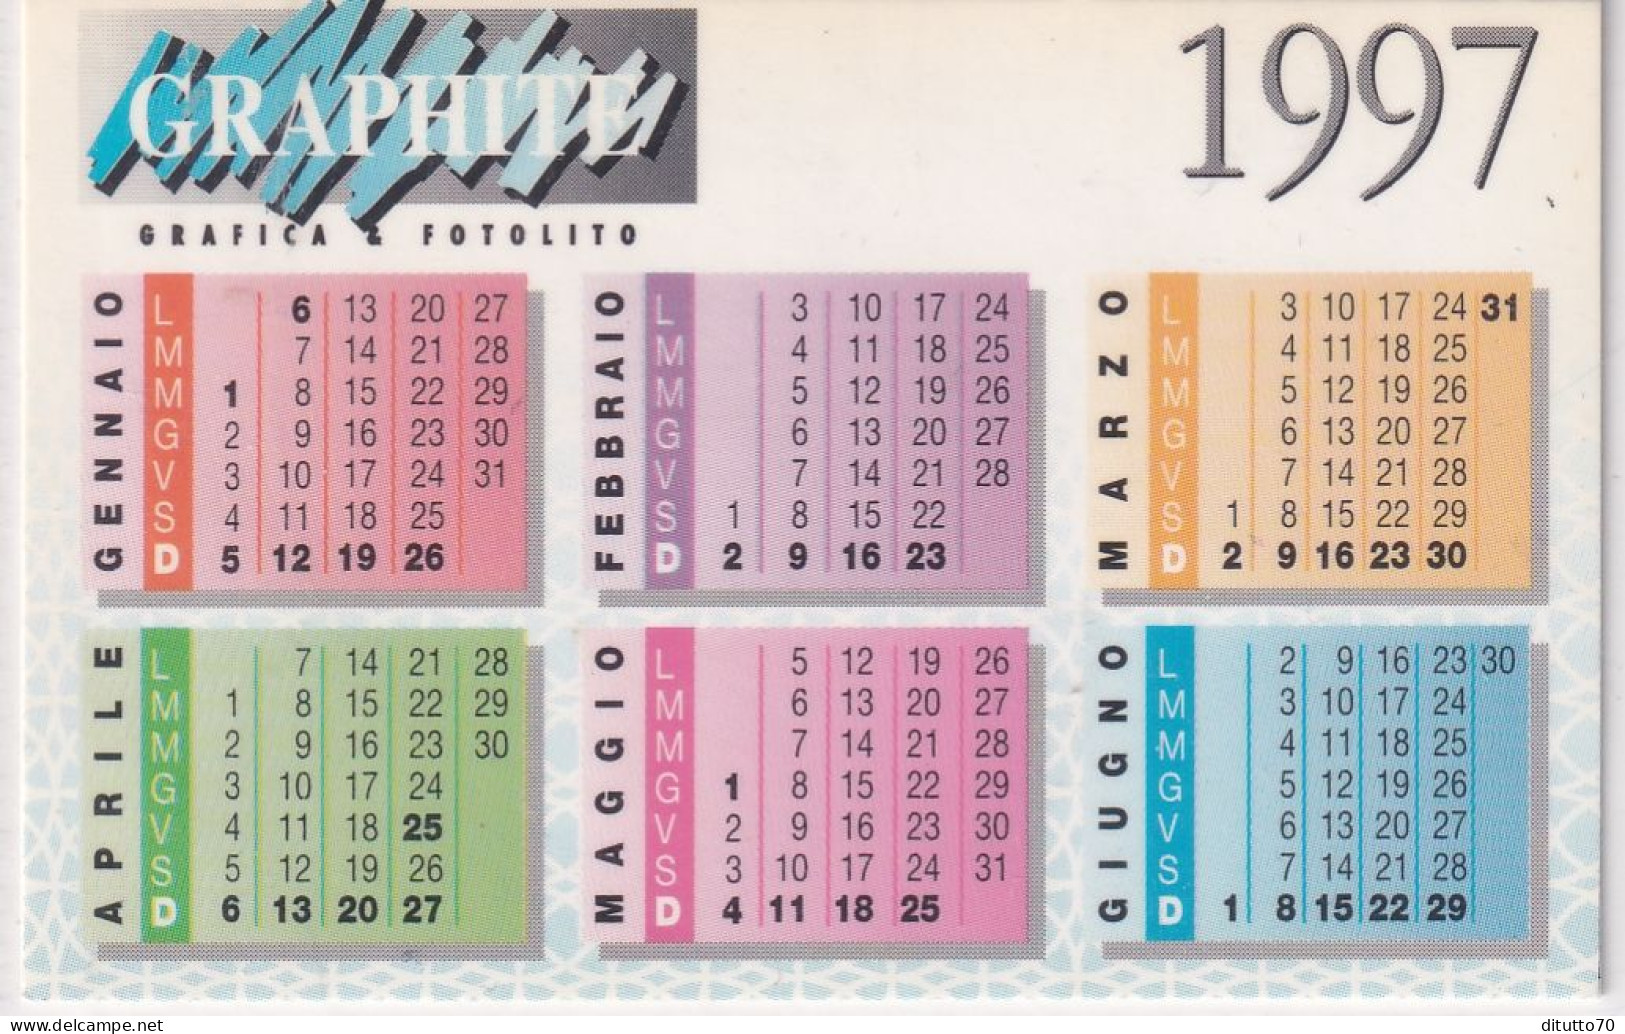 Calendarietto - Graphite - Anno 1997 - Kleinformat : 1991-00